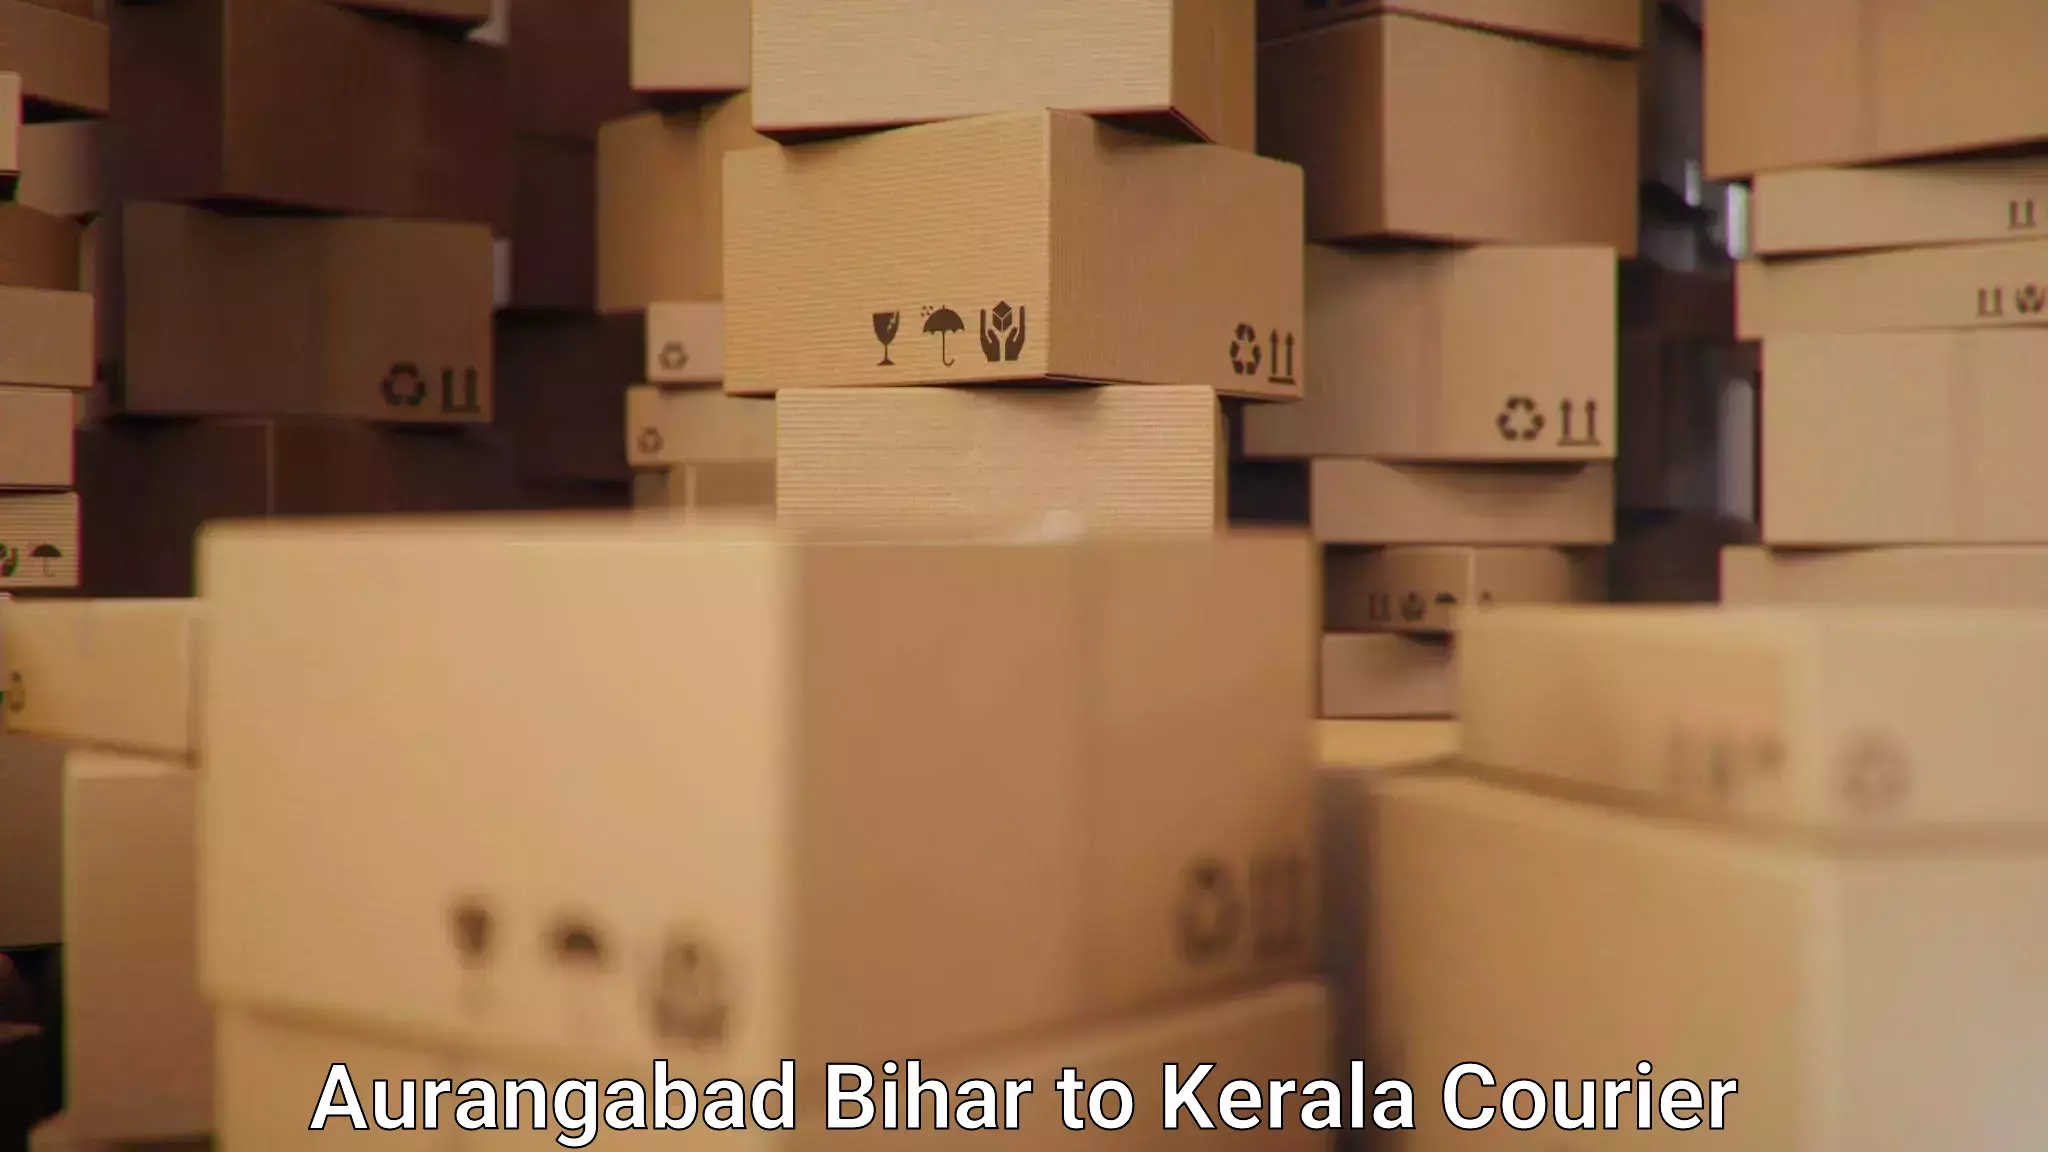 Courier dispatch services Aurangabad Bihar to Thamarassery